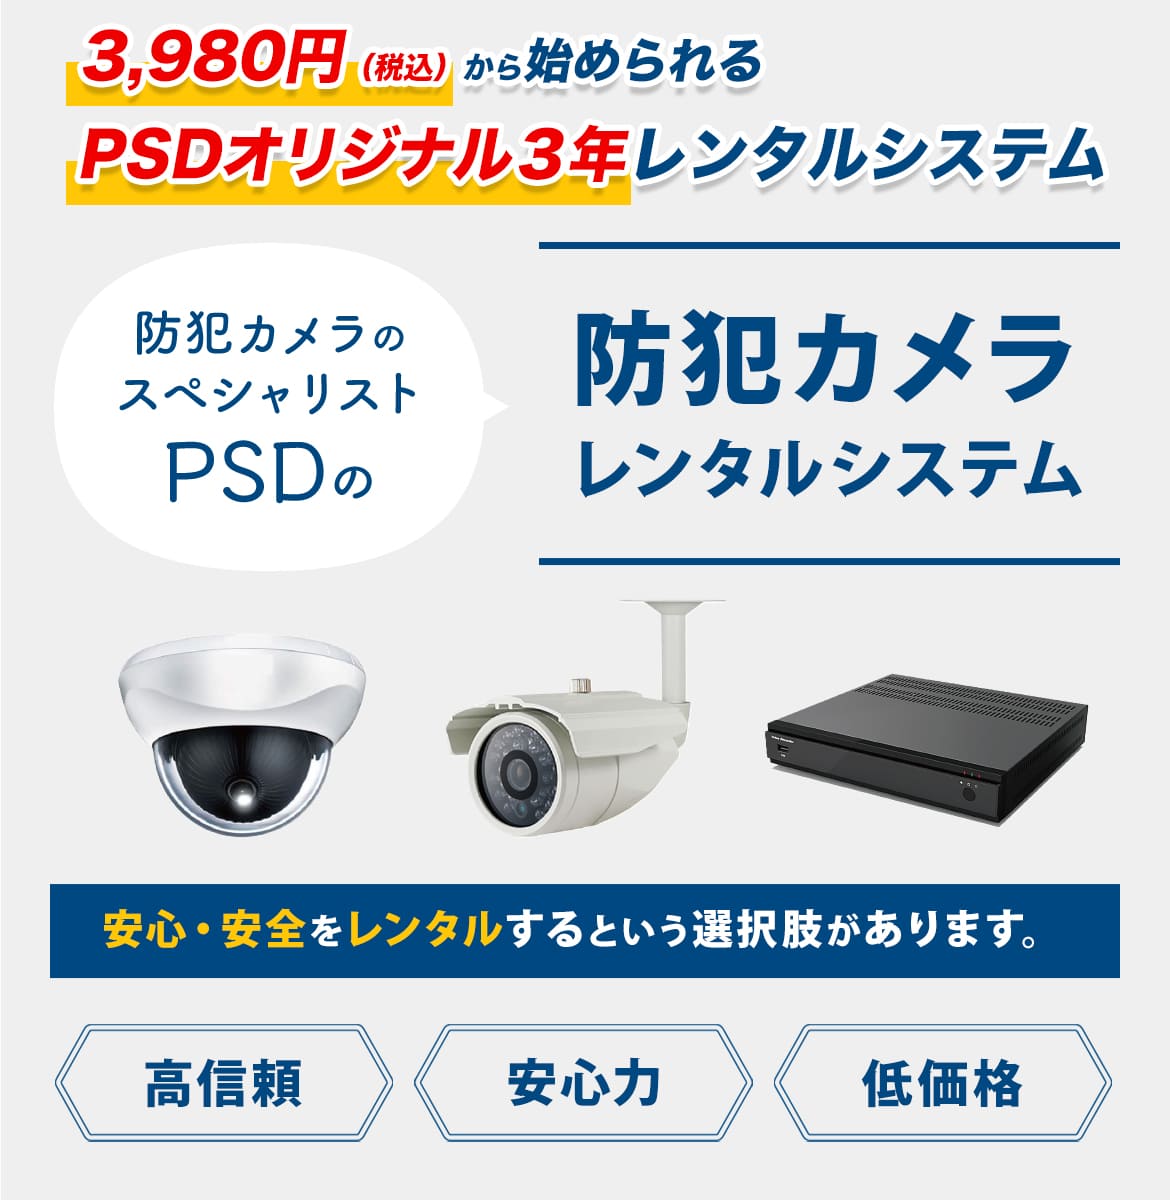 3980円から始められるPSDオリジナル防犯カメラ 3年レンタルシステム